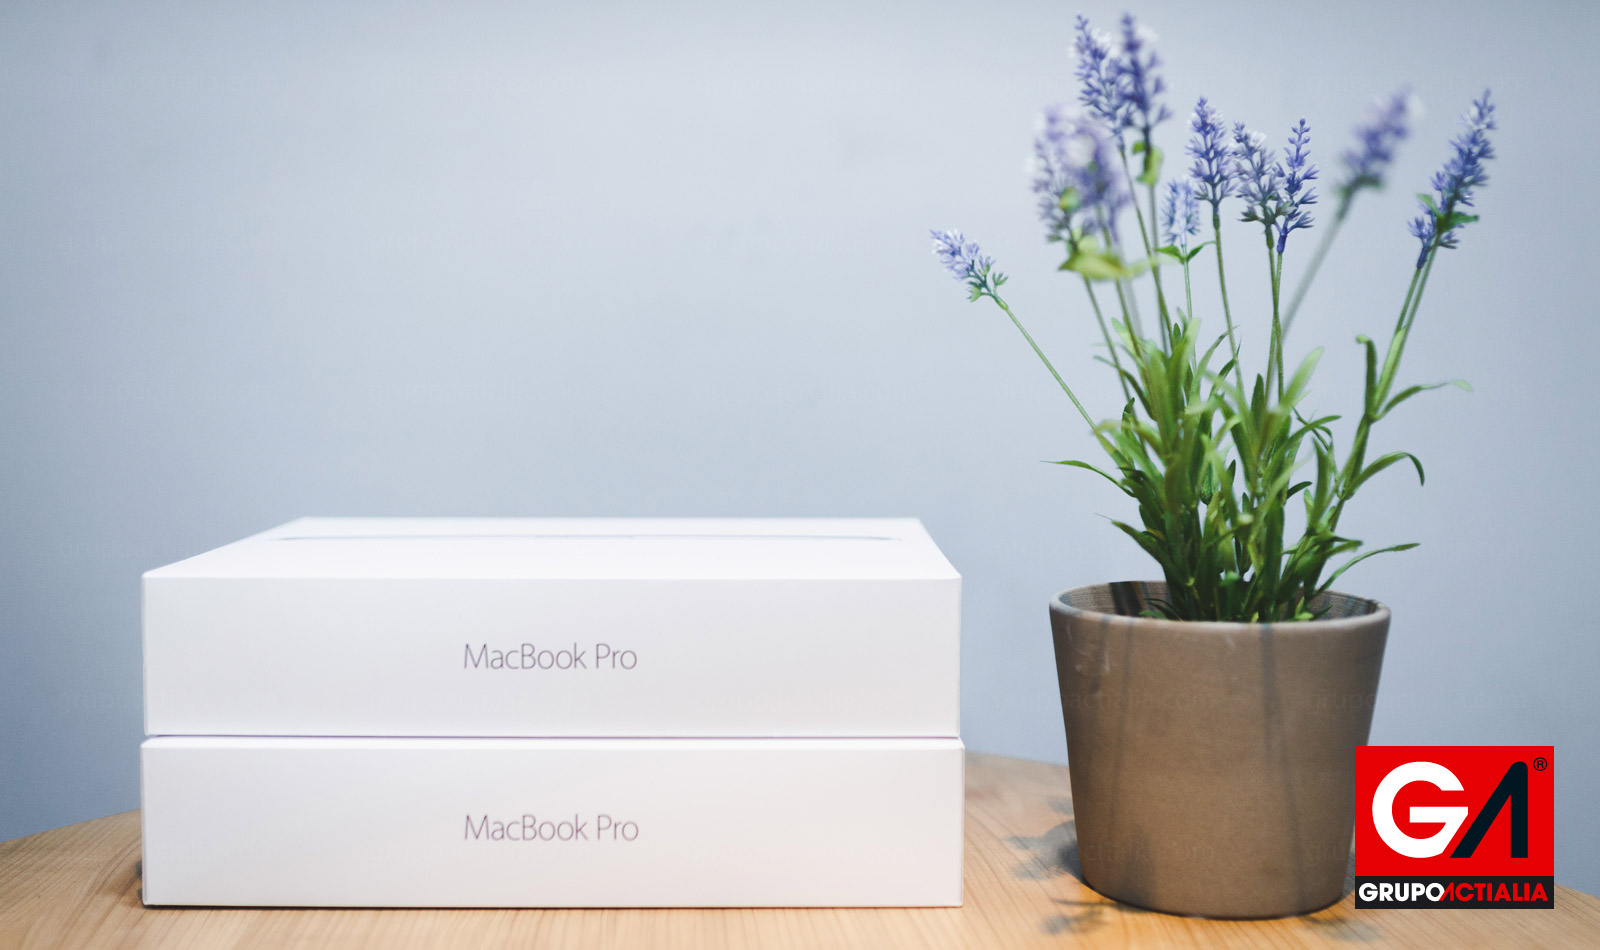 Adquirimos nuevos equipos Apple Macbook Pro